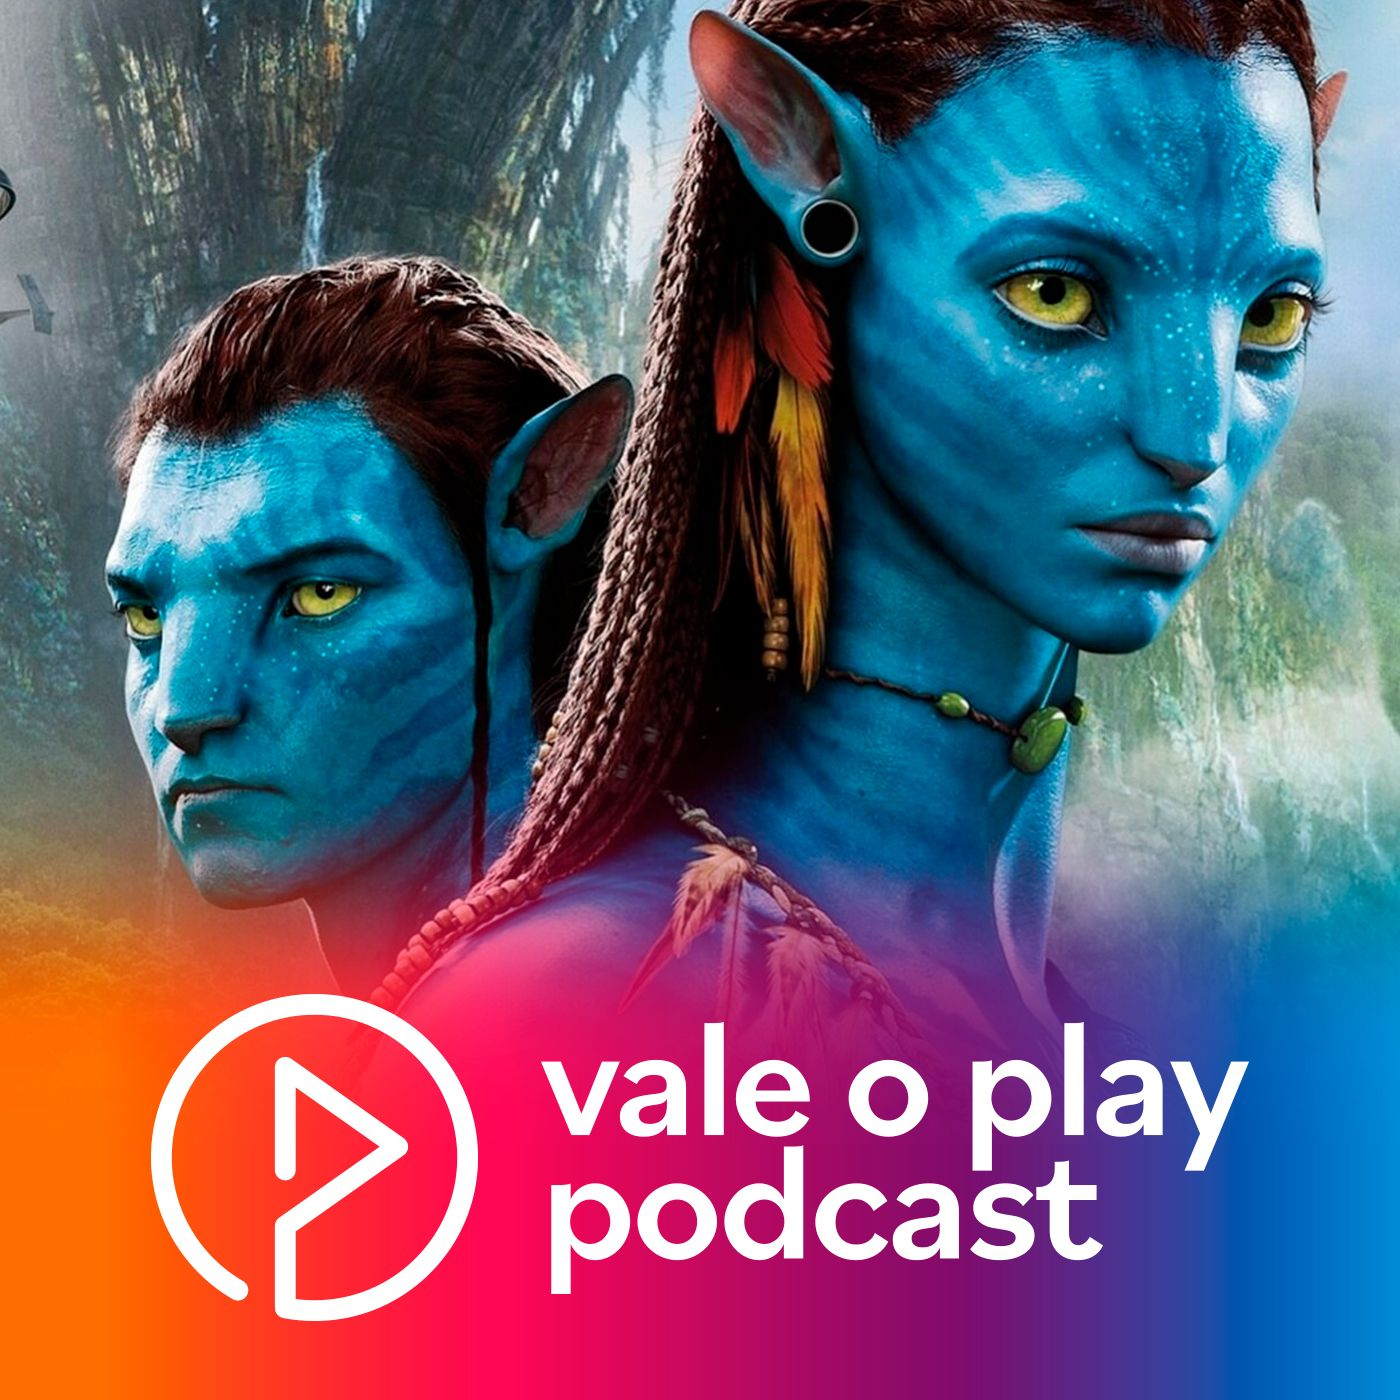 Vale o Play? | Avatar: O Caminho da Água